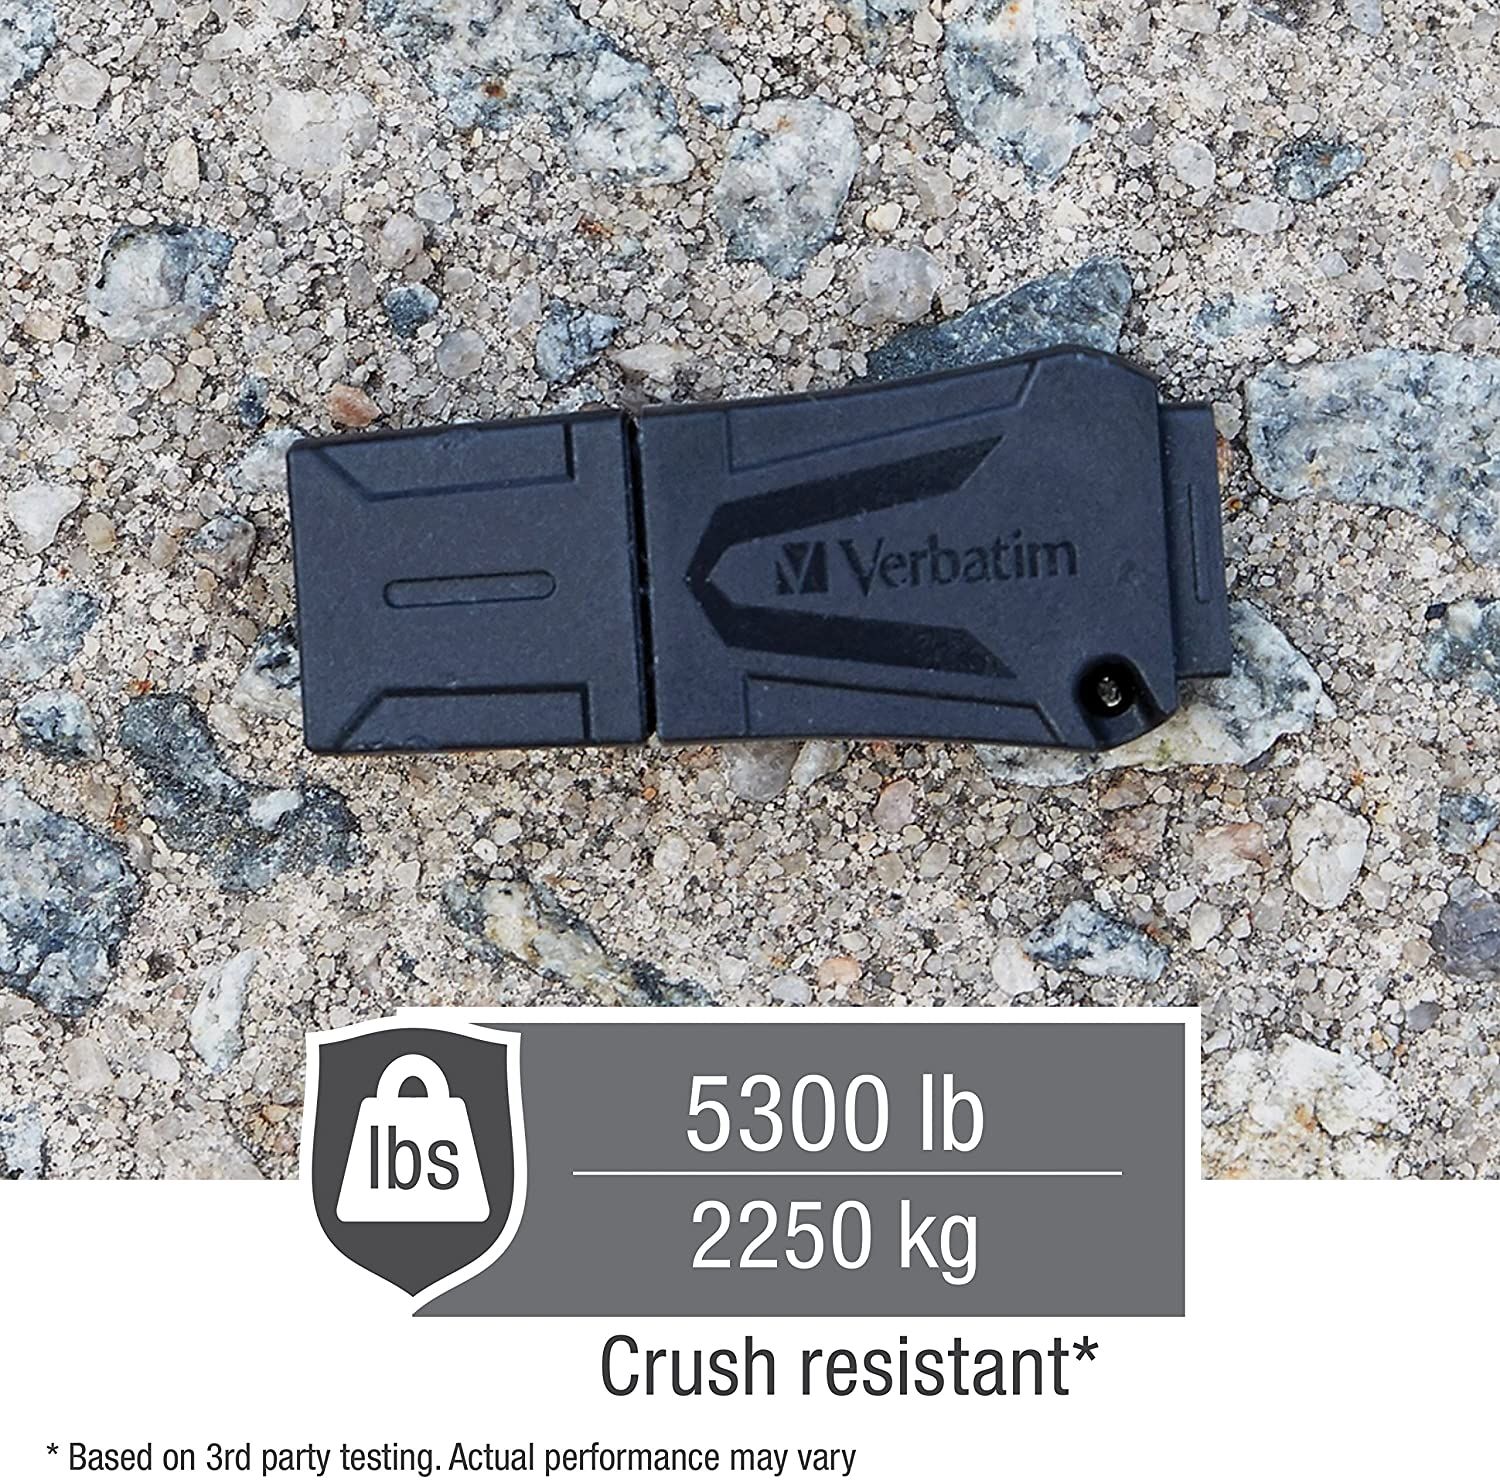 Verbatim ToughMAX USB Flash Drive Crush Resistant